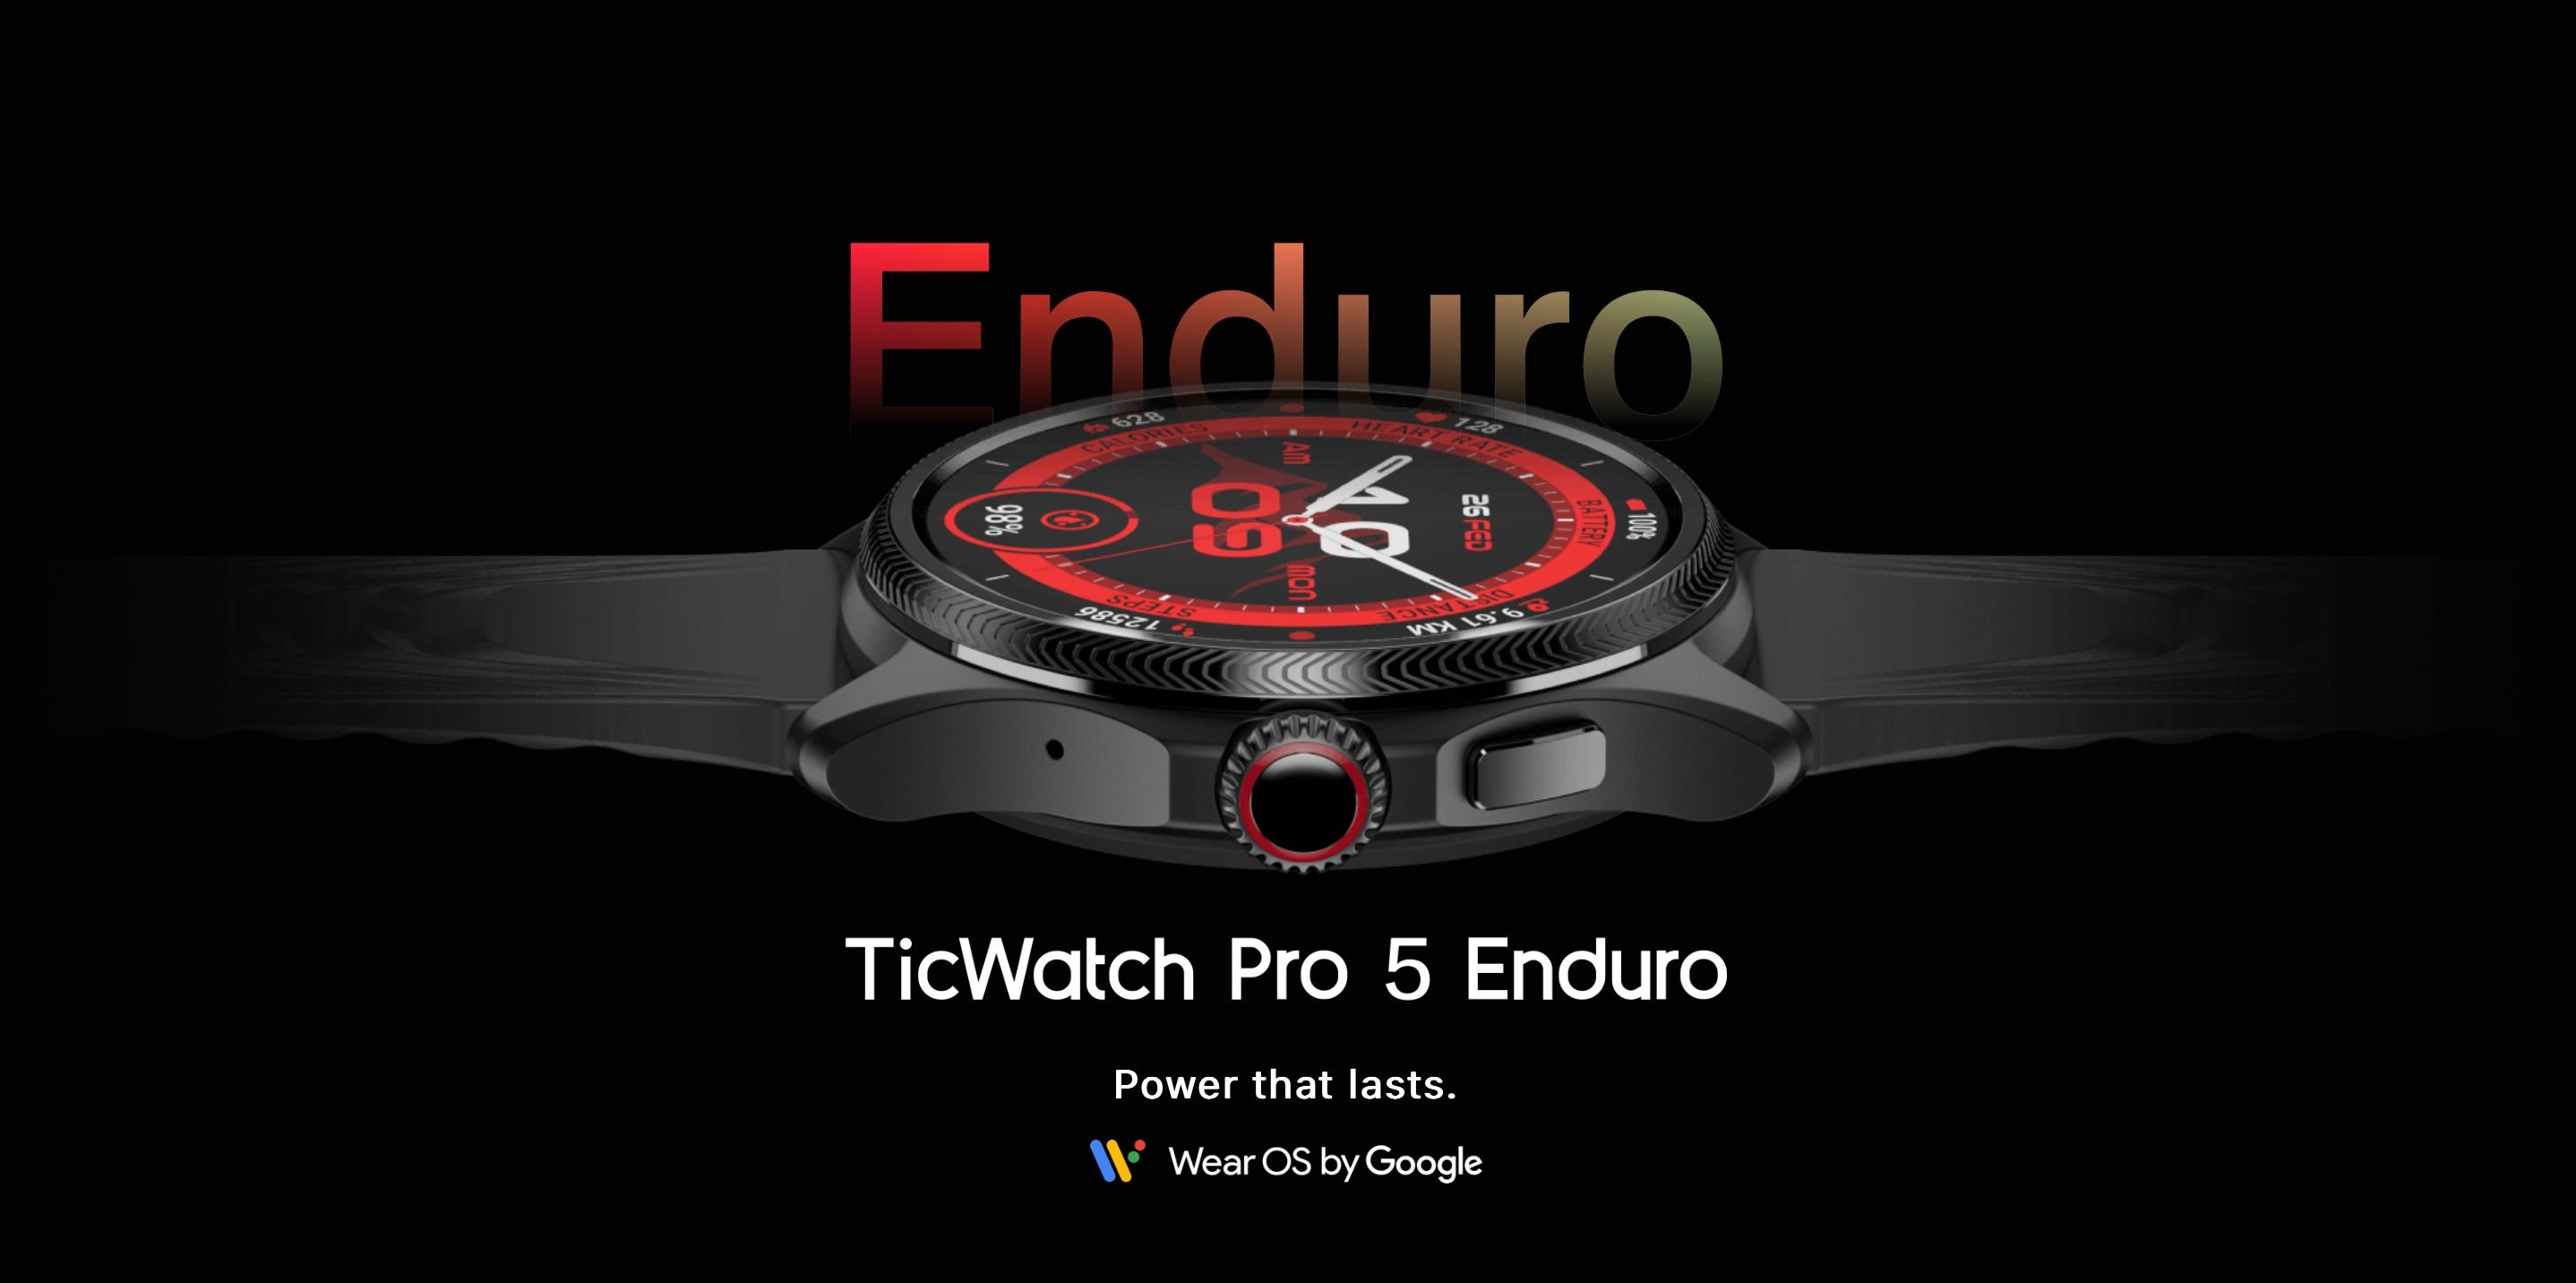 Mobvoi ha presentato il TicWatch Pro 5 Enduro con un nuovo cinturino, vetro zaffiro e Wear OS al prezzo di 349 dollari.